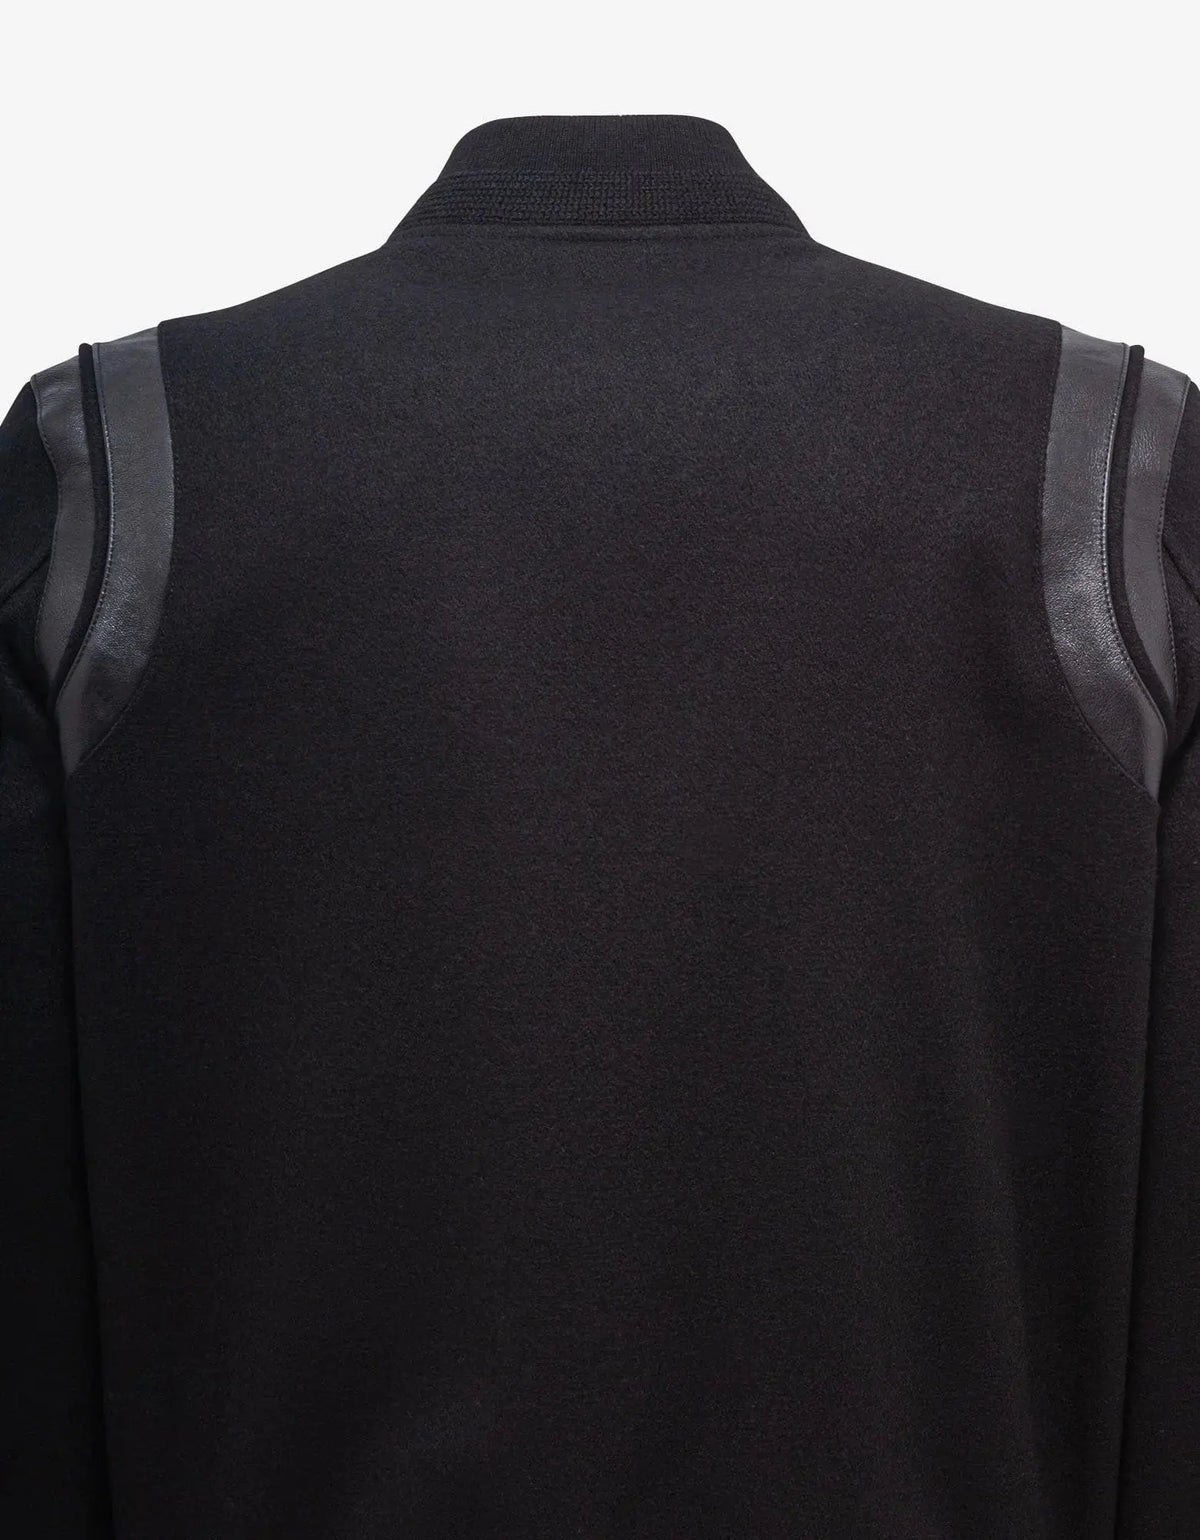 All-Black Wool Teddy Jacket